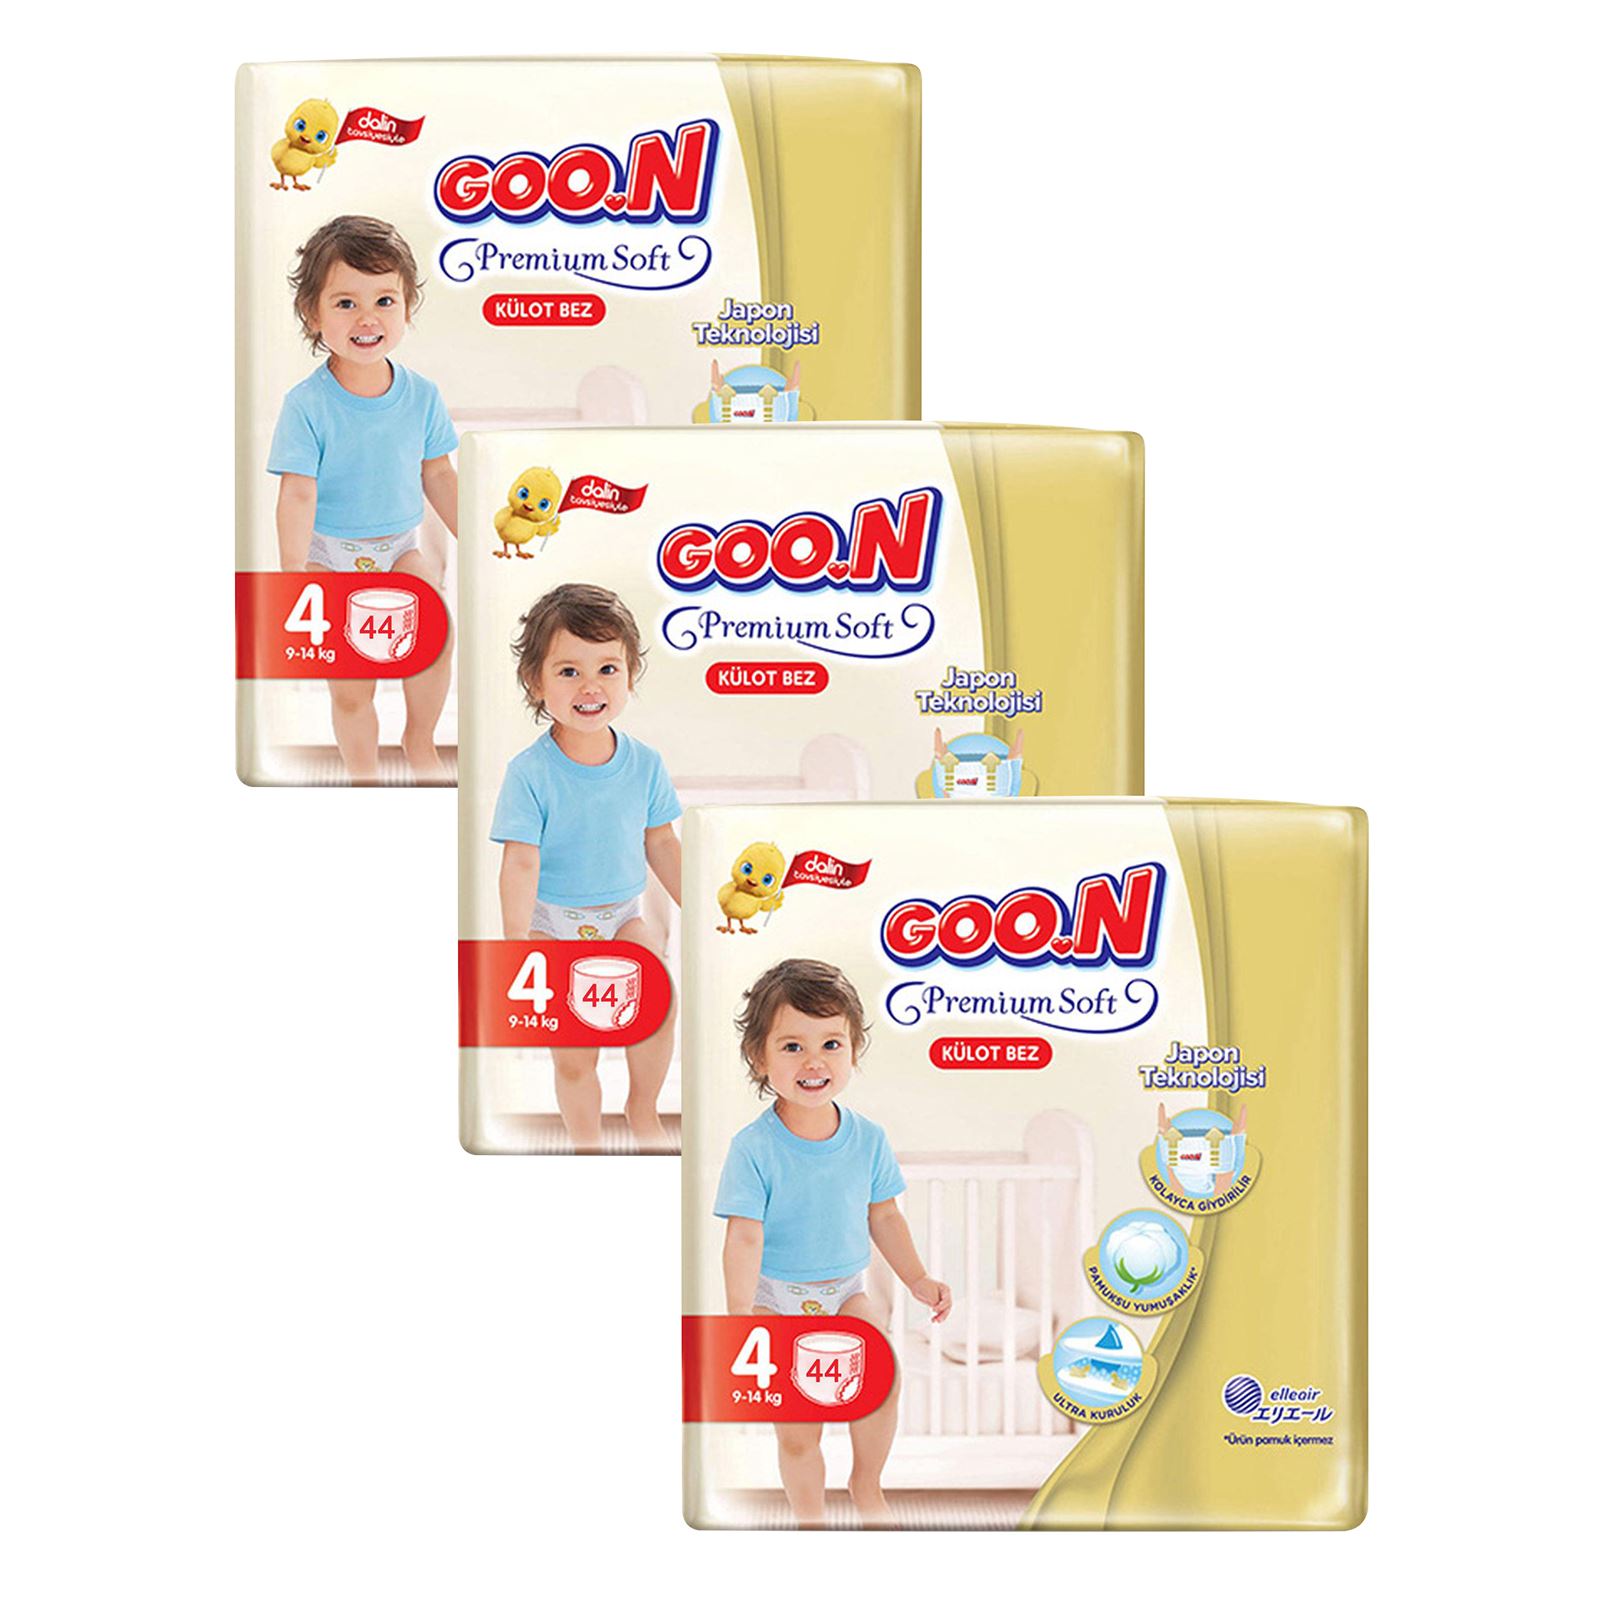 Goon Premium Soft Külot Bebek Bezi Aylık Fırsat Paketi 4 Beden 132 Adet